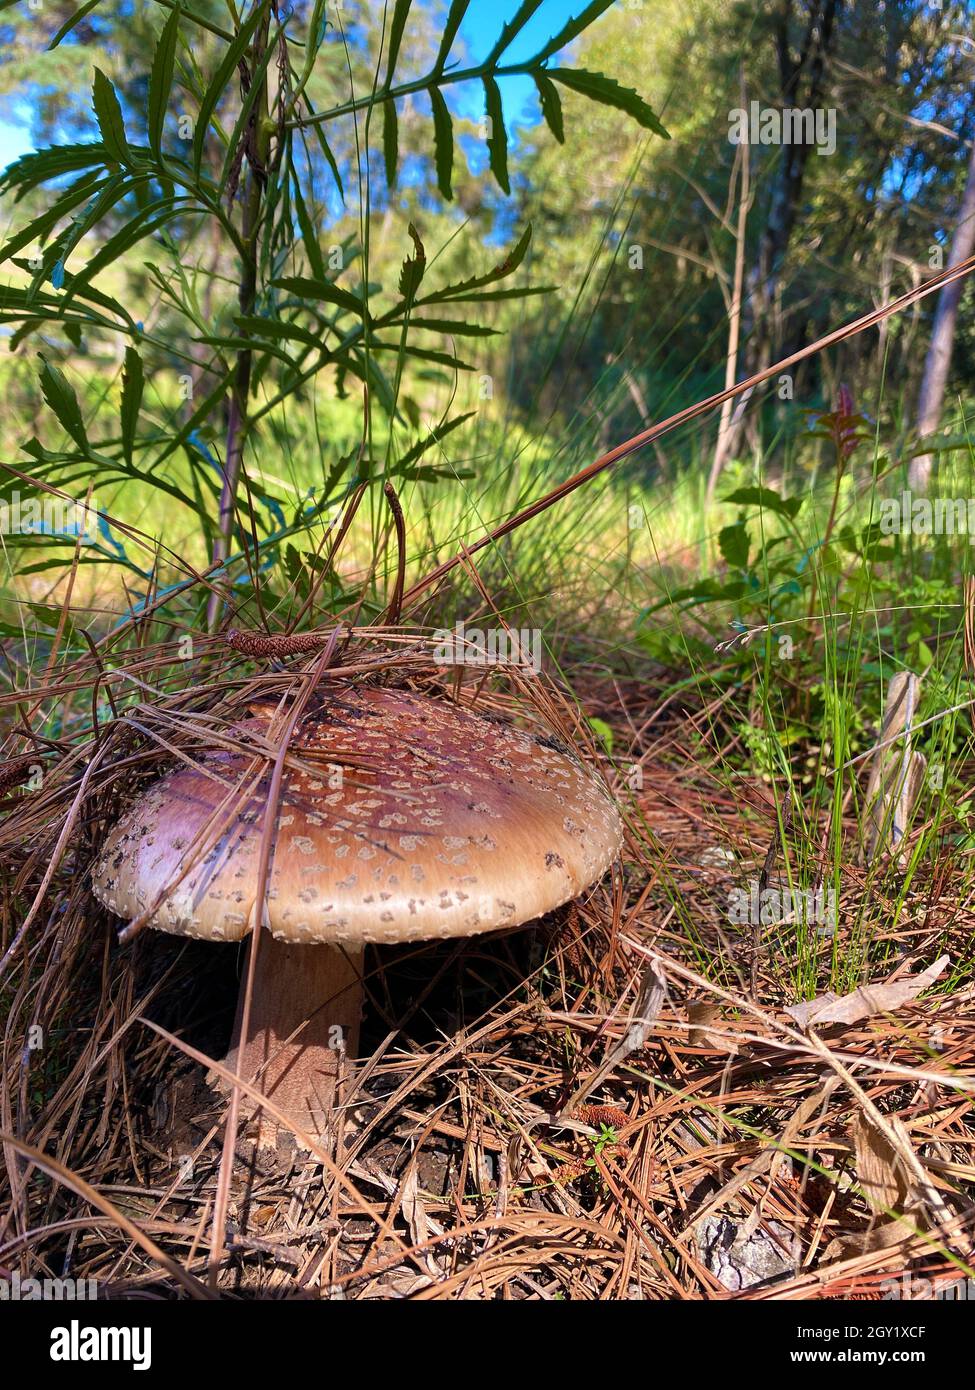 Champignons dans natura.Les champignons comestibles et même toxiques ont des fonctions écologiques bénéfiques pour la forêt et l'environnement. Banque D'Images